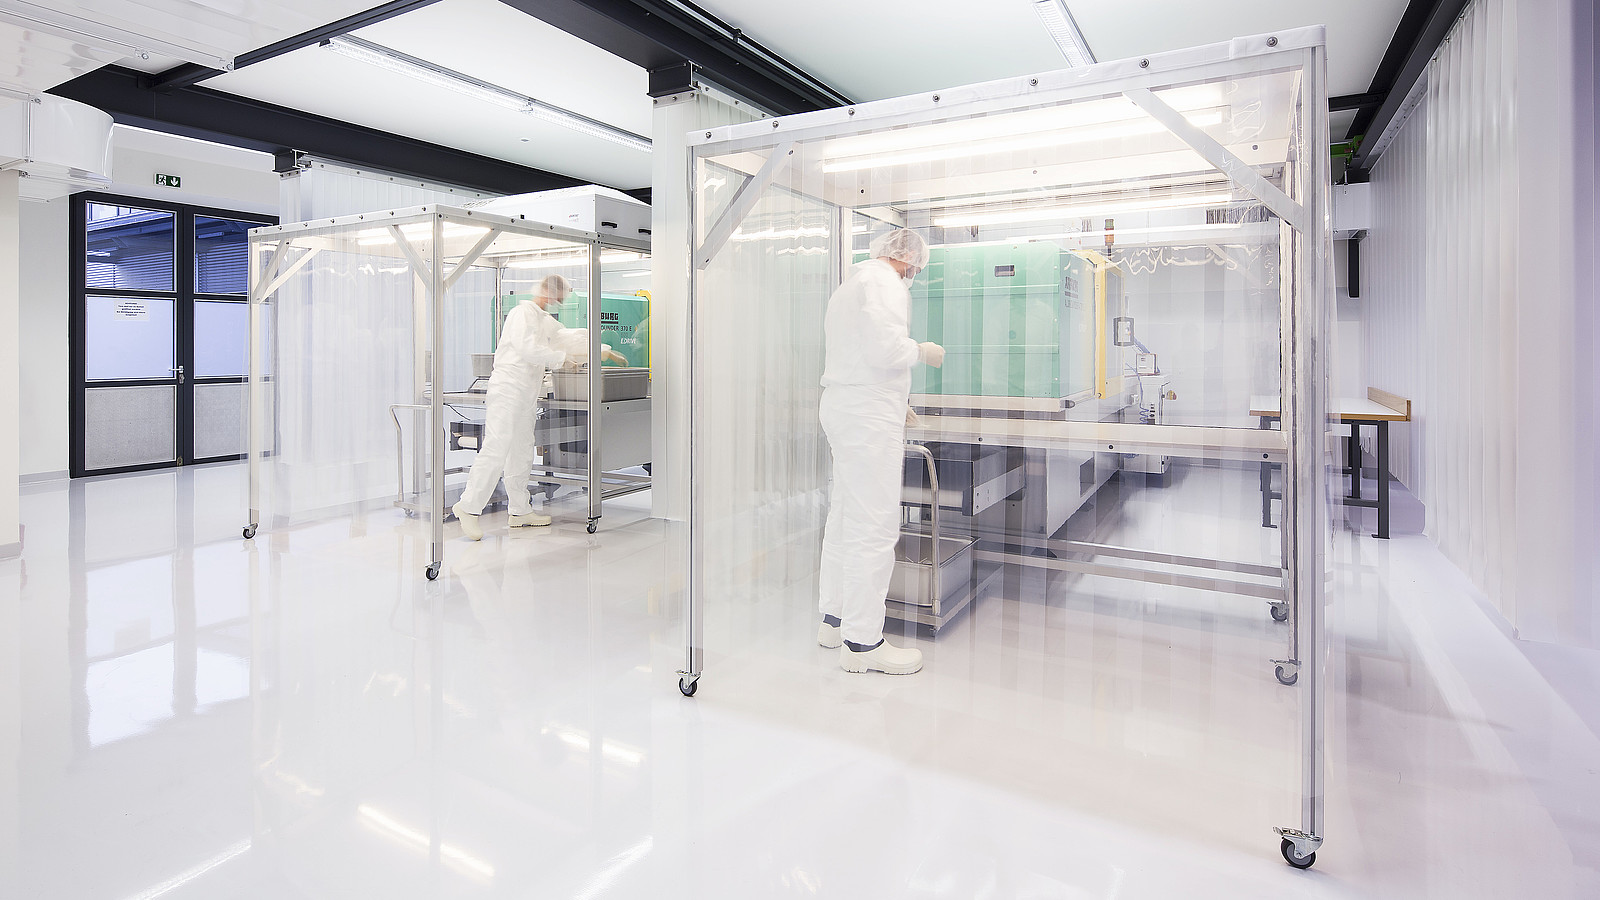 Das Bild zeigt zwei 1zu1mitarbeiter in Schutzkleidung in der 1zu1reinraumfertigung für die Herstellung von keimfreien und sterilen Kunststoffteilen.